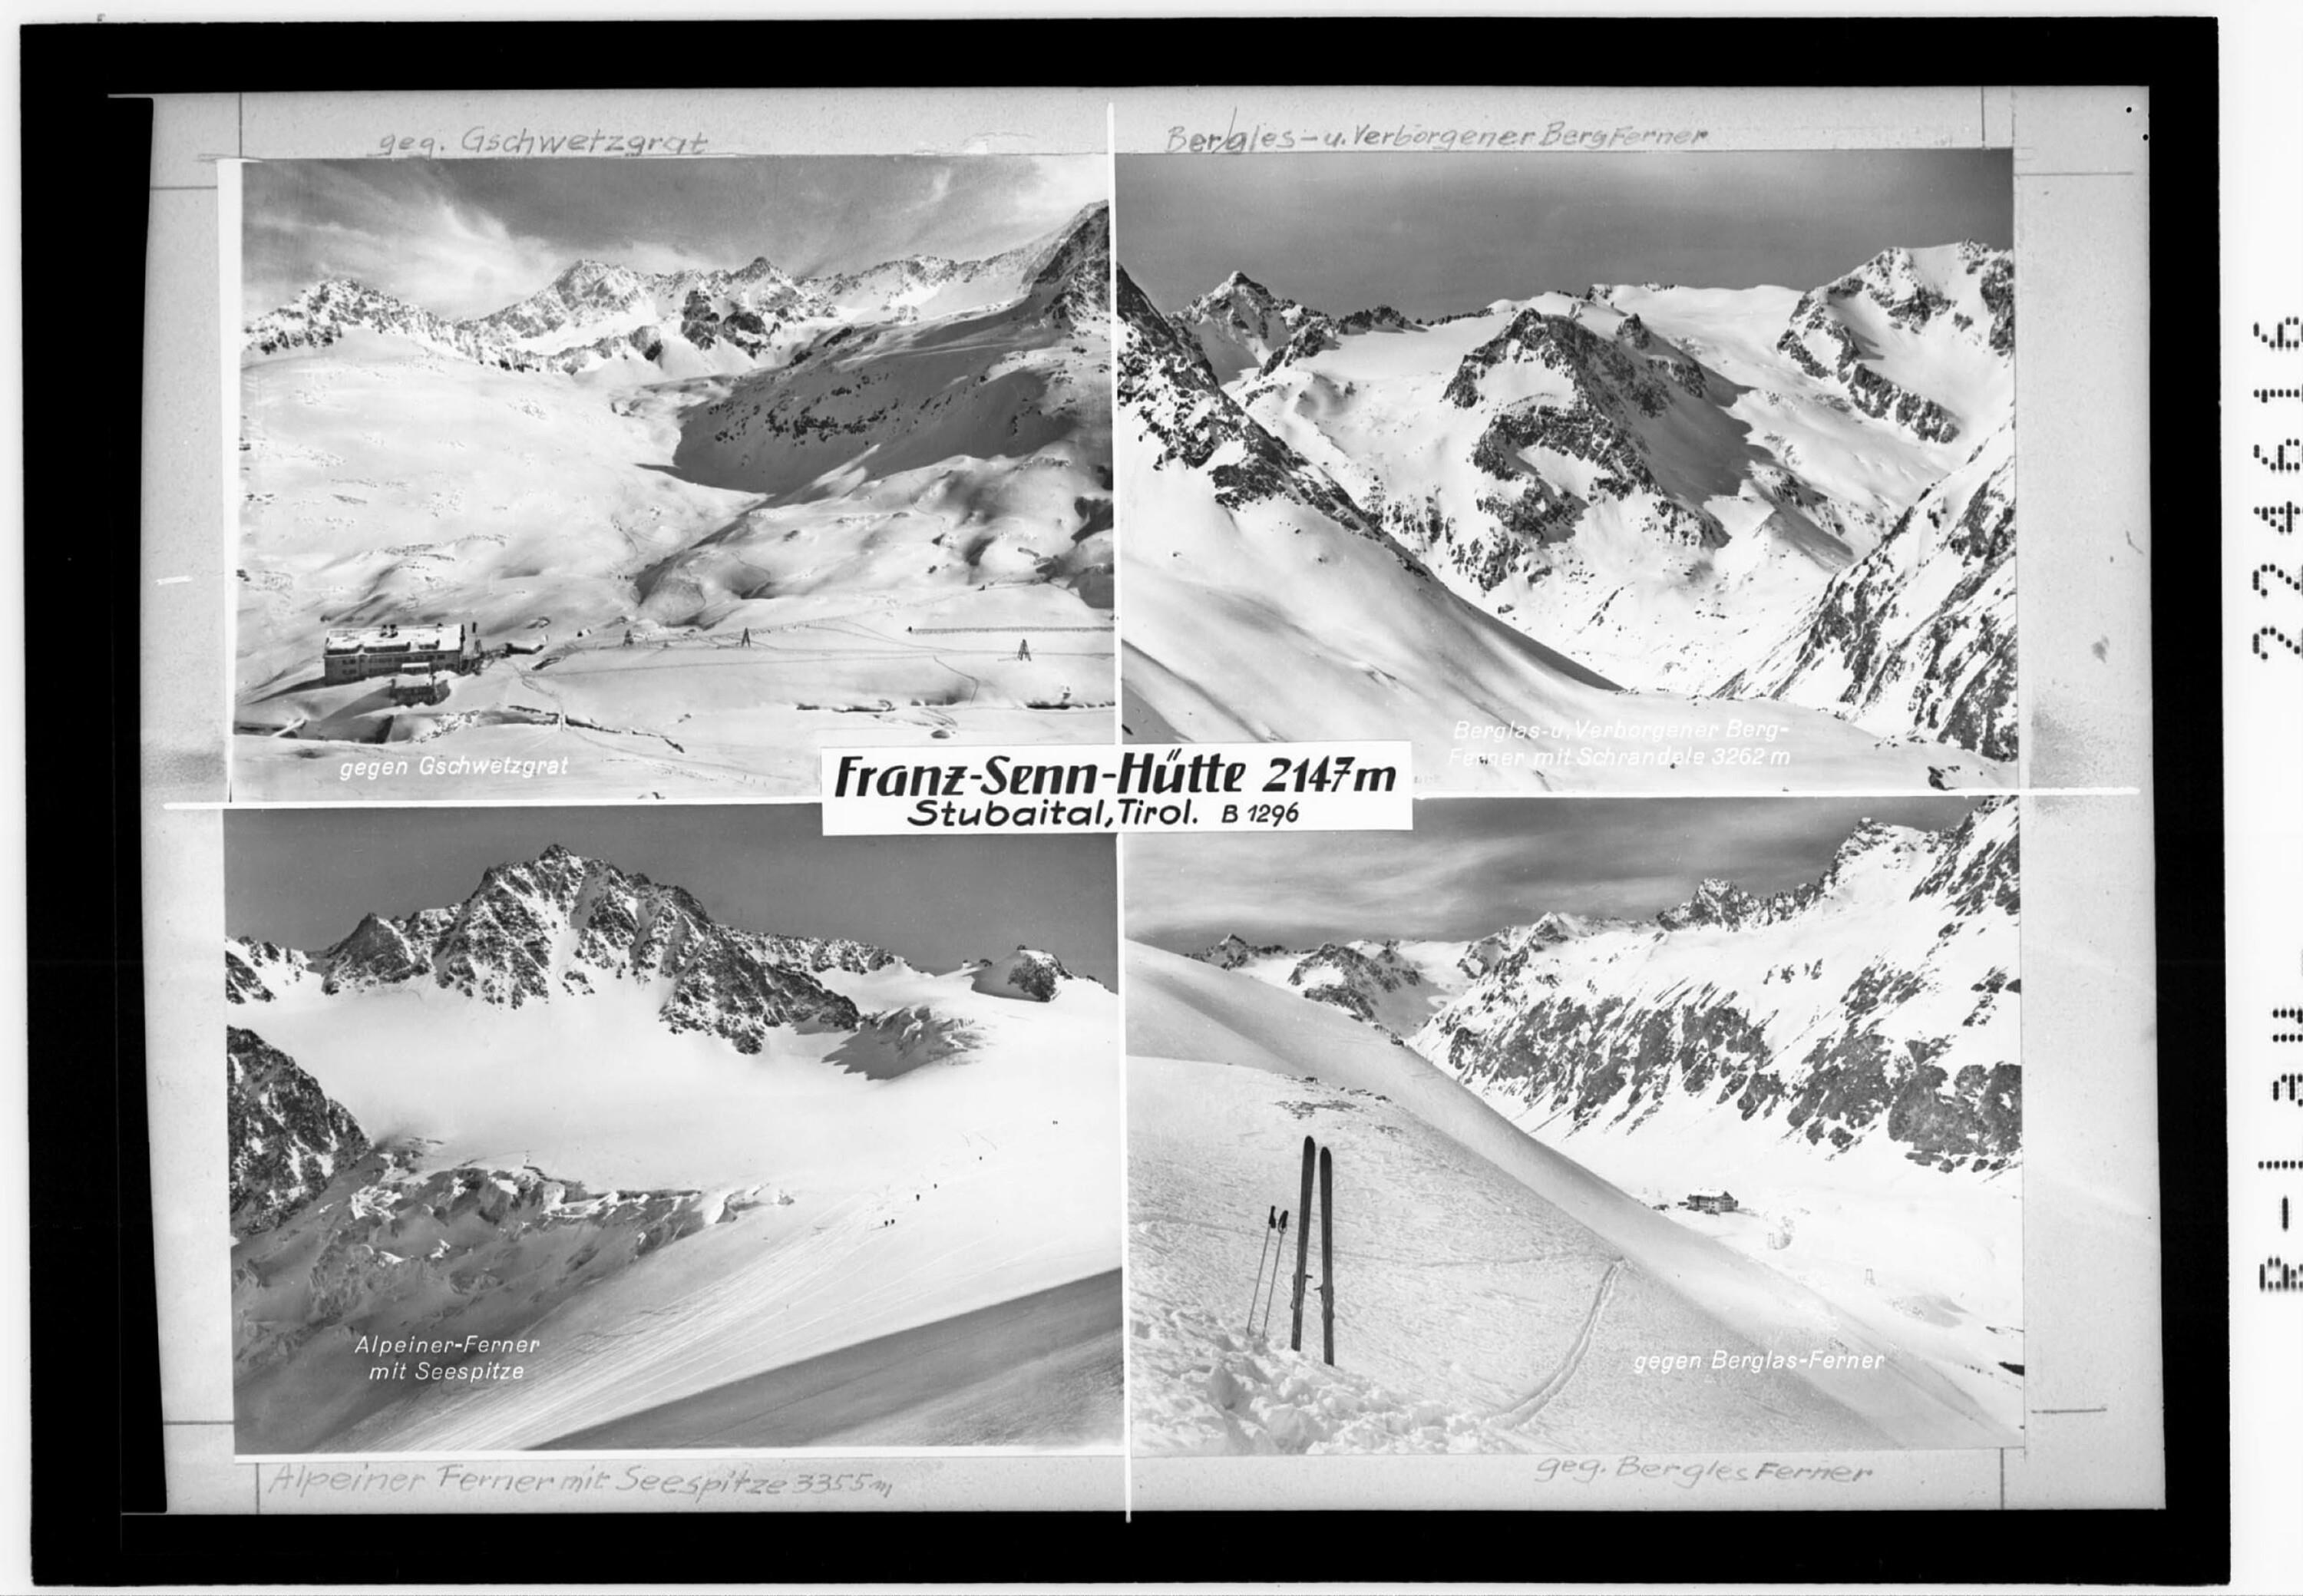 Franz Senn Hütte 2147 m / Stubaital / Tirol></div>


    <hr>
    <div class=